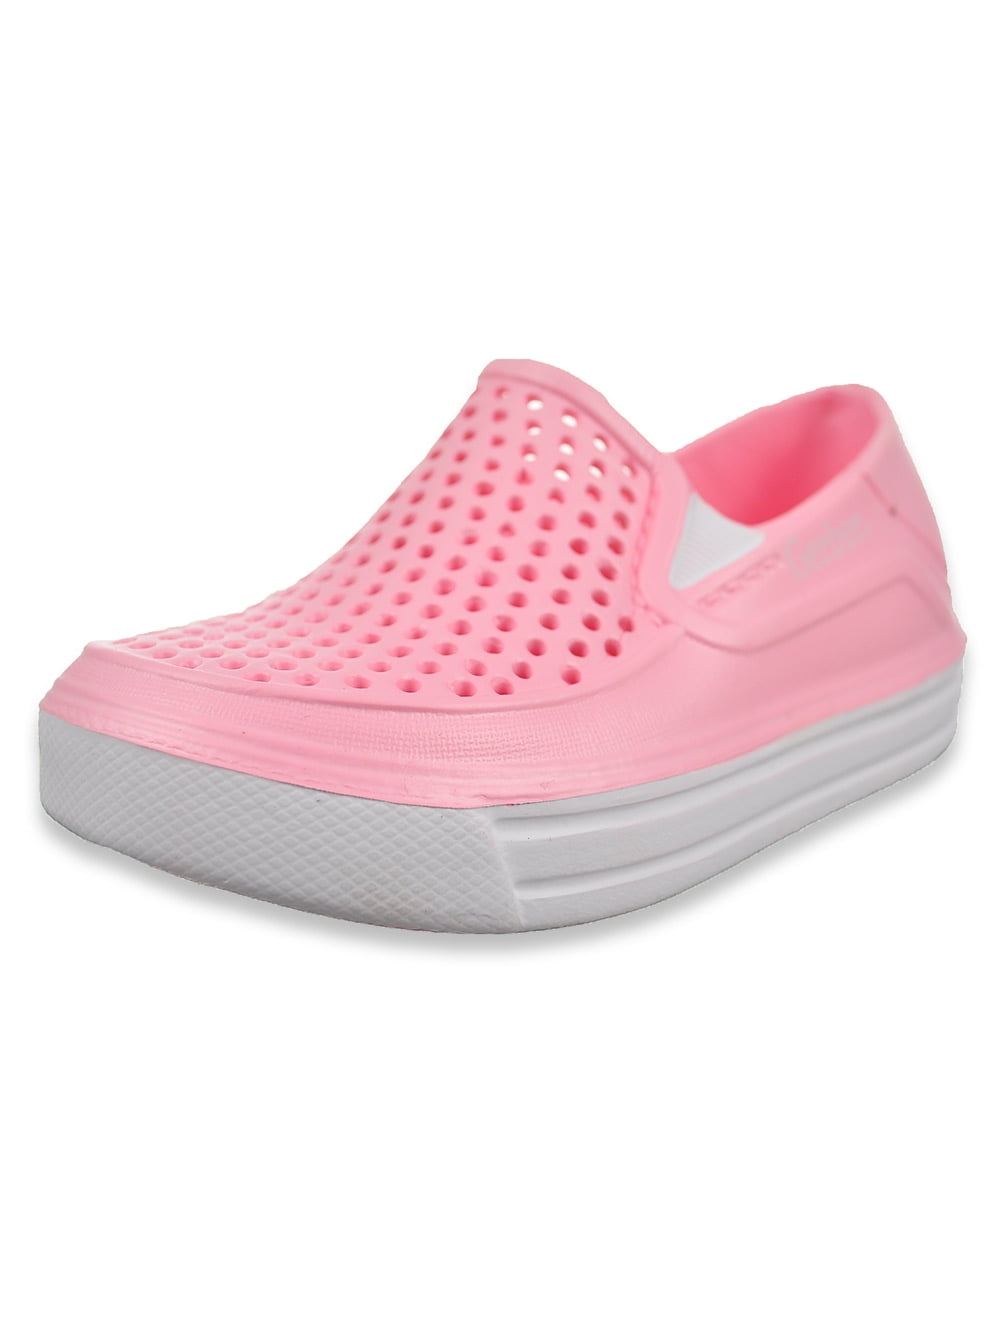 Gerber - Gerber Baby Girls' Slip-On Shoes (Infant) - Walmart.com ...